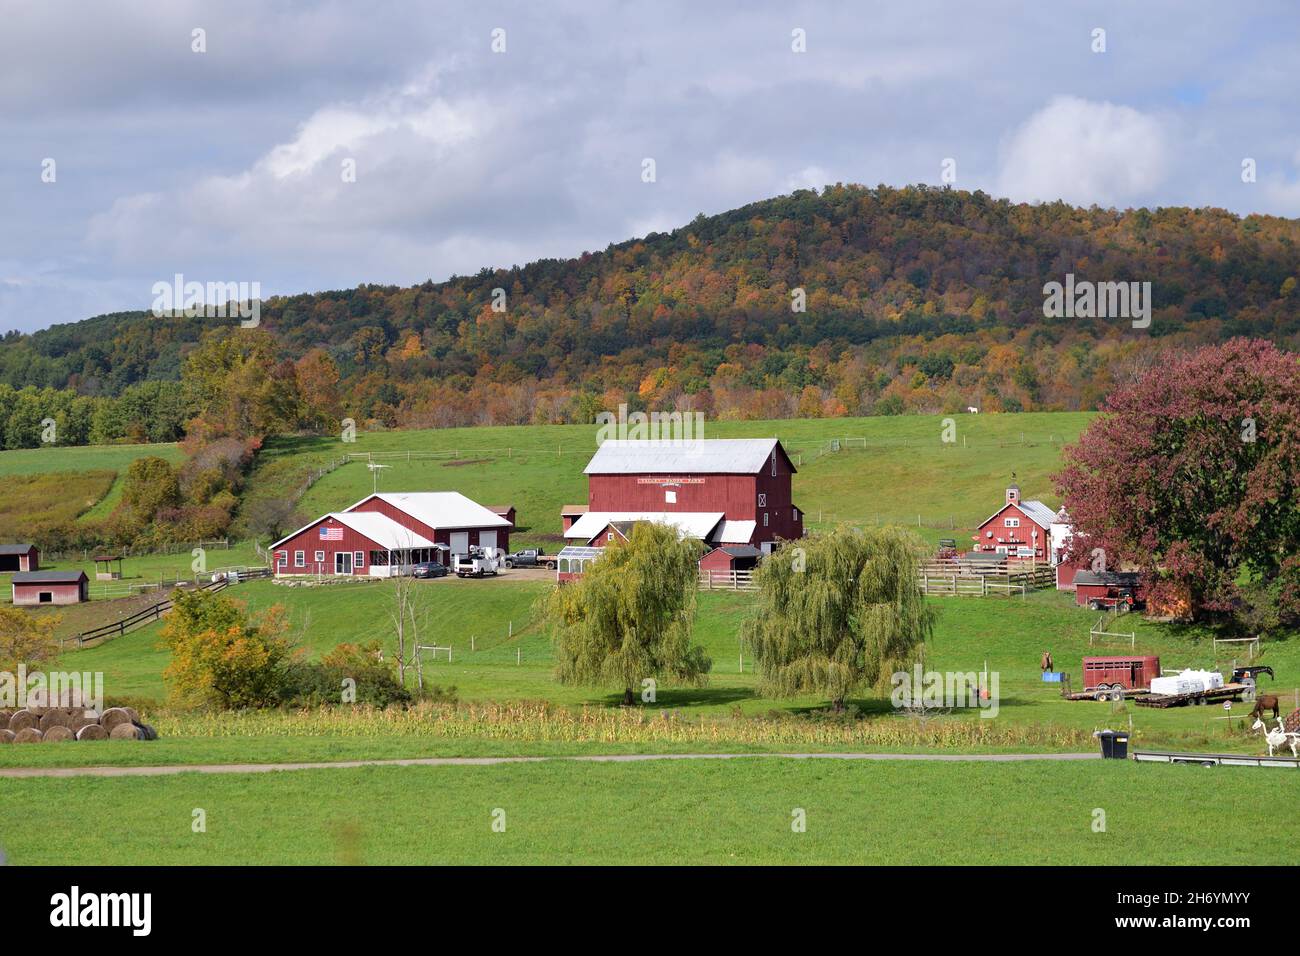 East Springfield, New York, USA. Mehrere Scheunen und Strukturen definieren eine große landwirtschaftliche Ausbreitung in einer ruhigen Umgebung im Nordosten von New York. Stockfoto